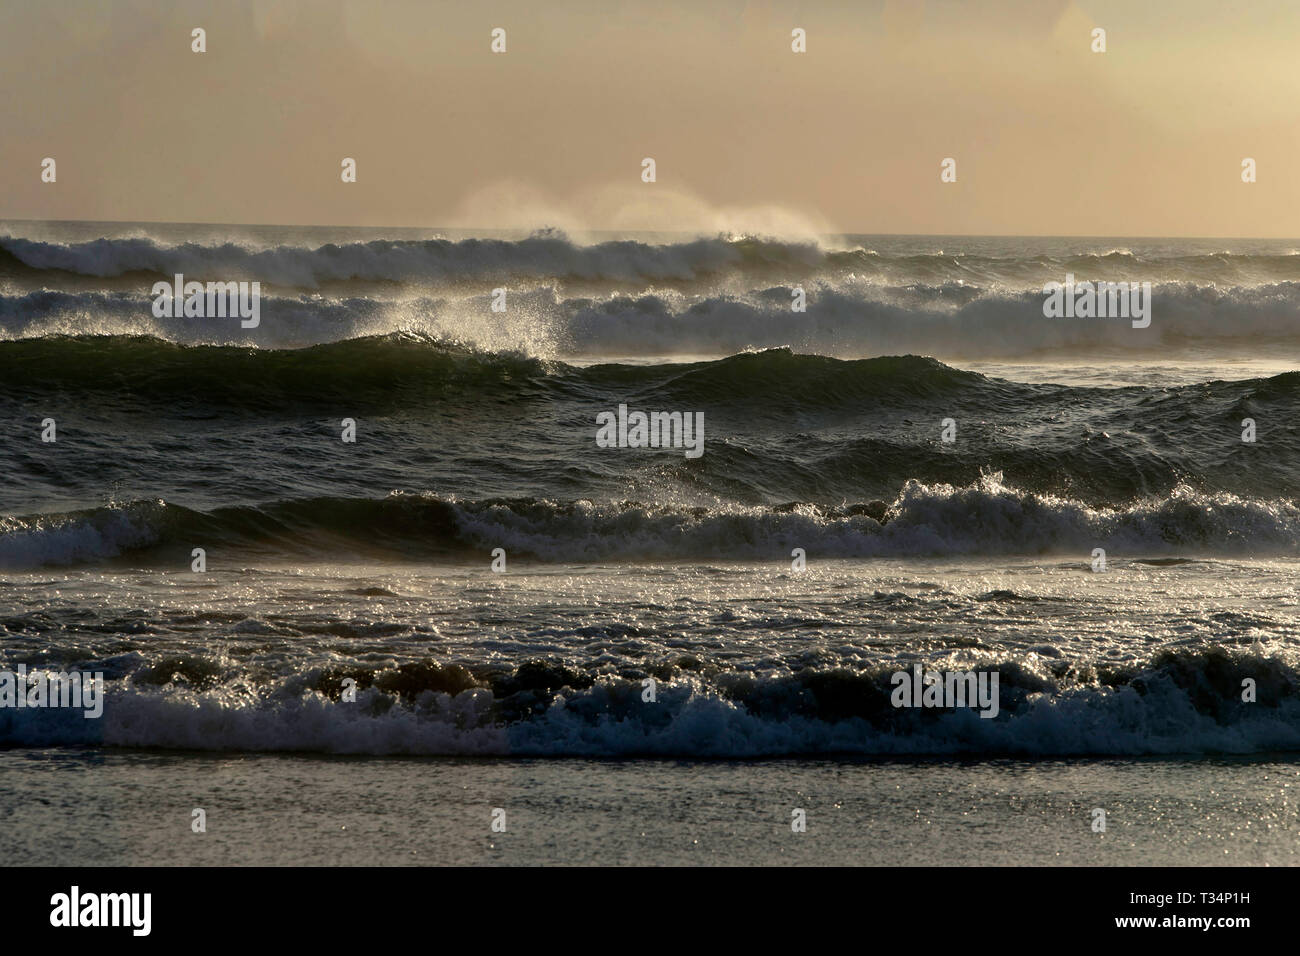 Waves crashing on beach, Lombok, Indonesia Stock Photo